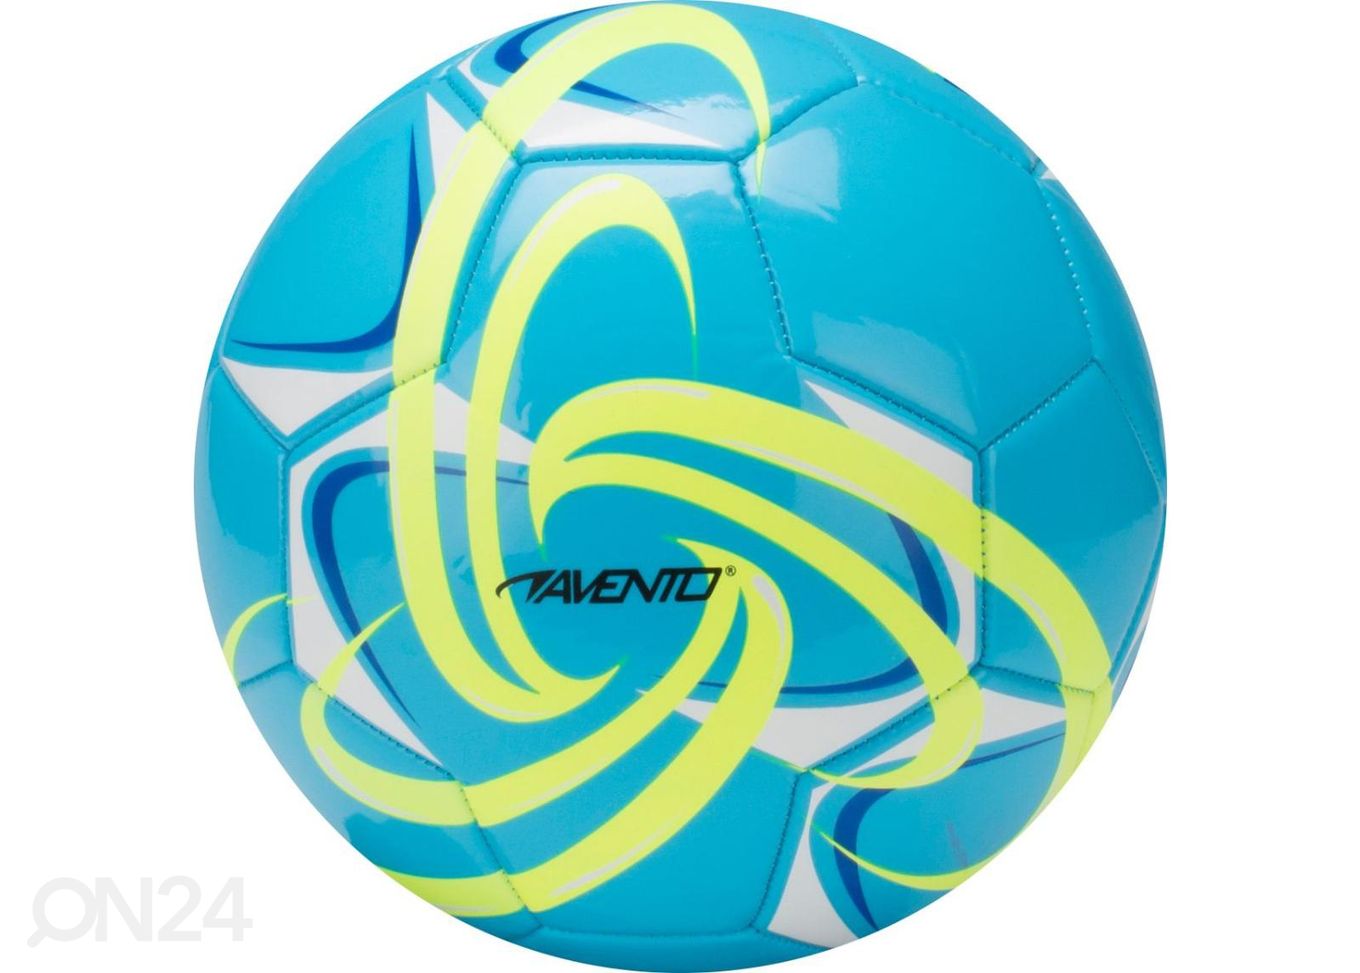 Jalgpall PVC Avento suurendatud